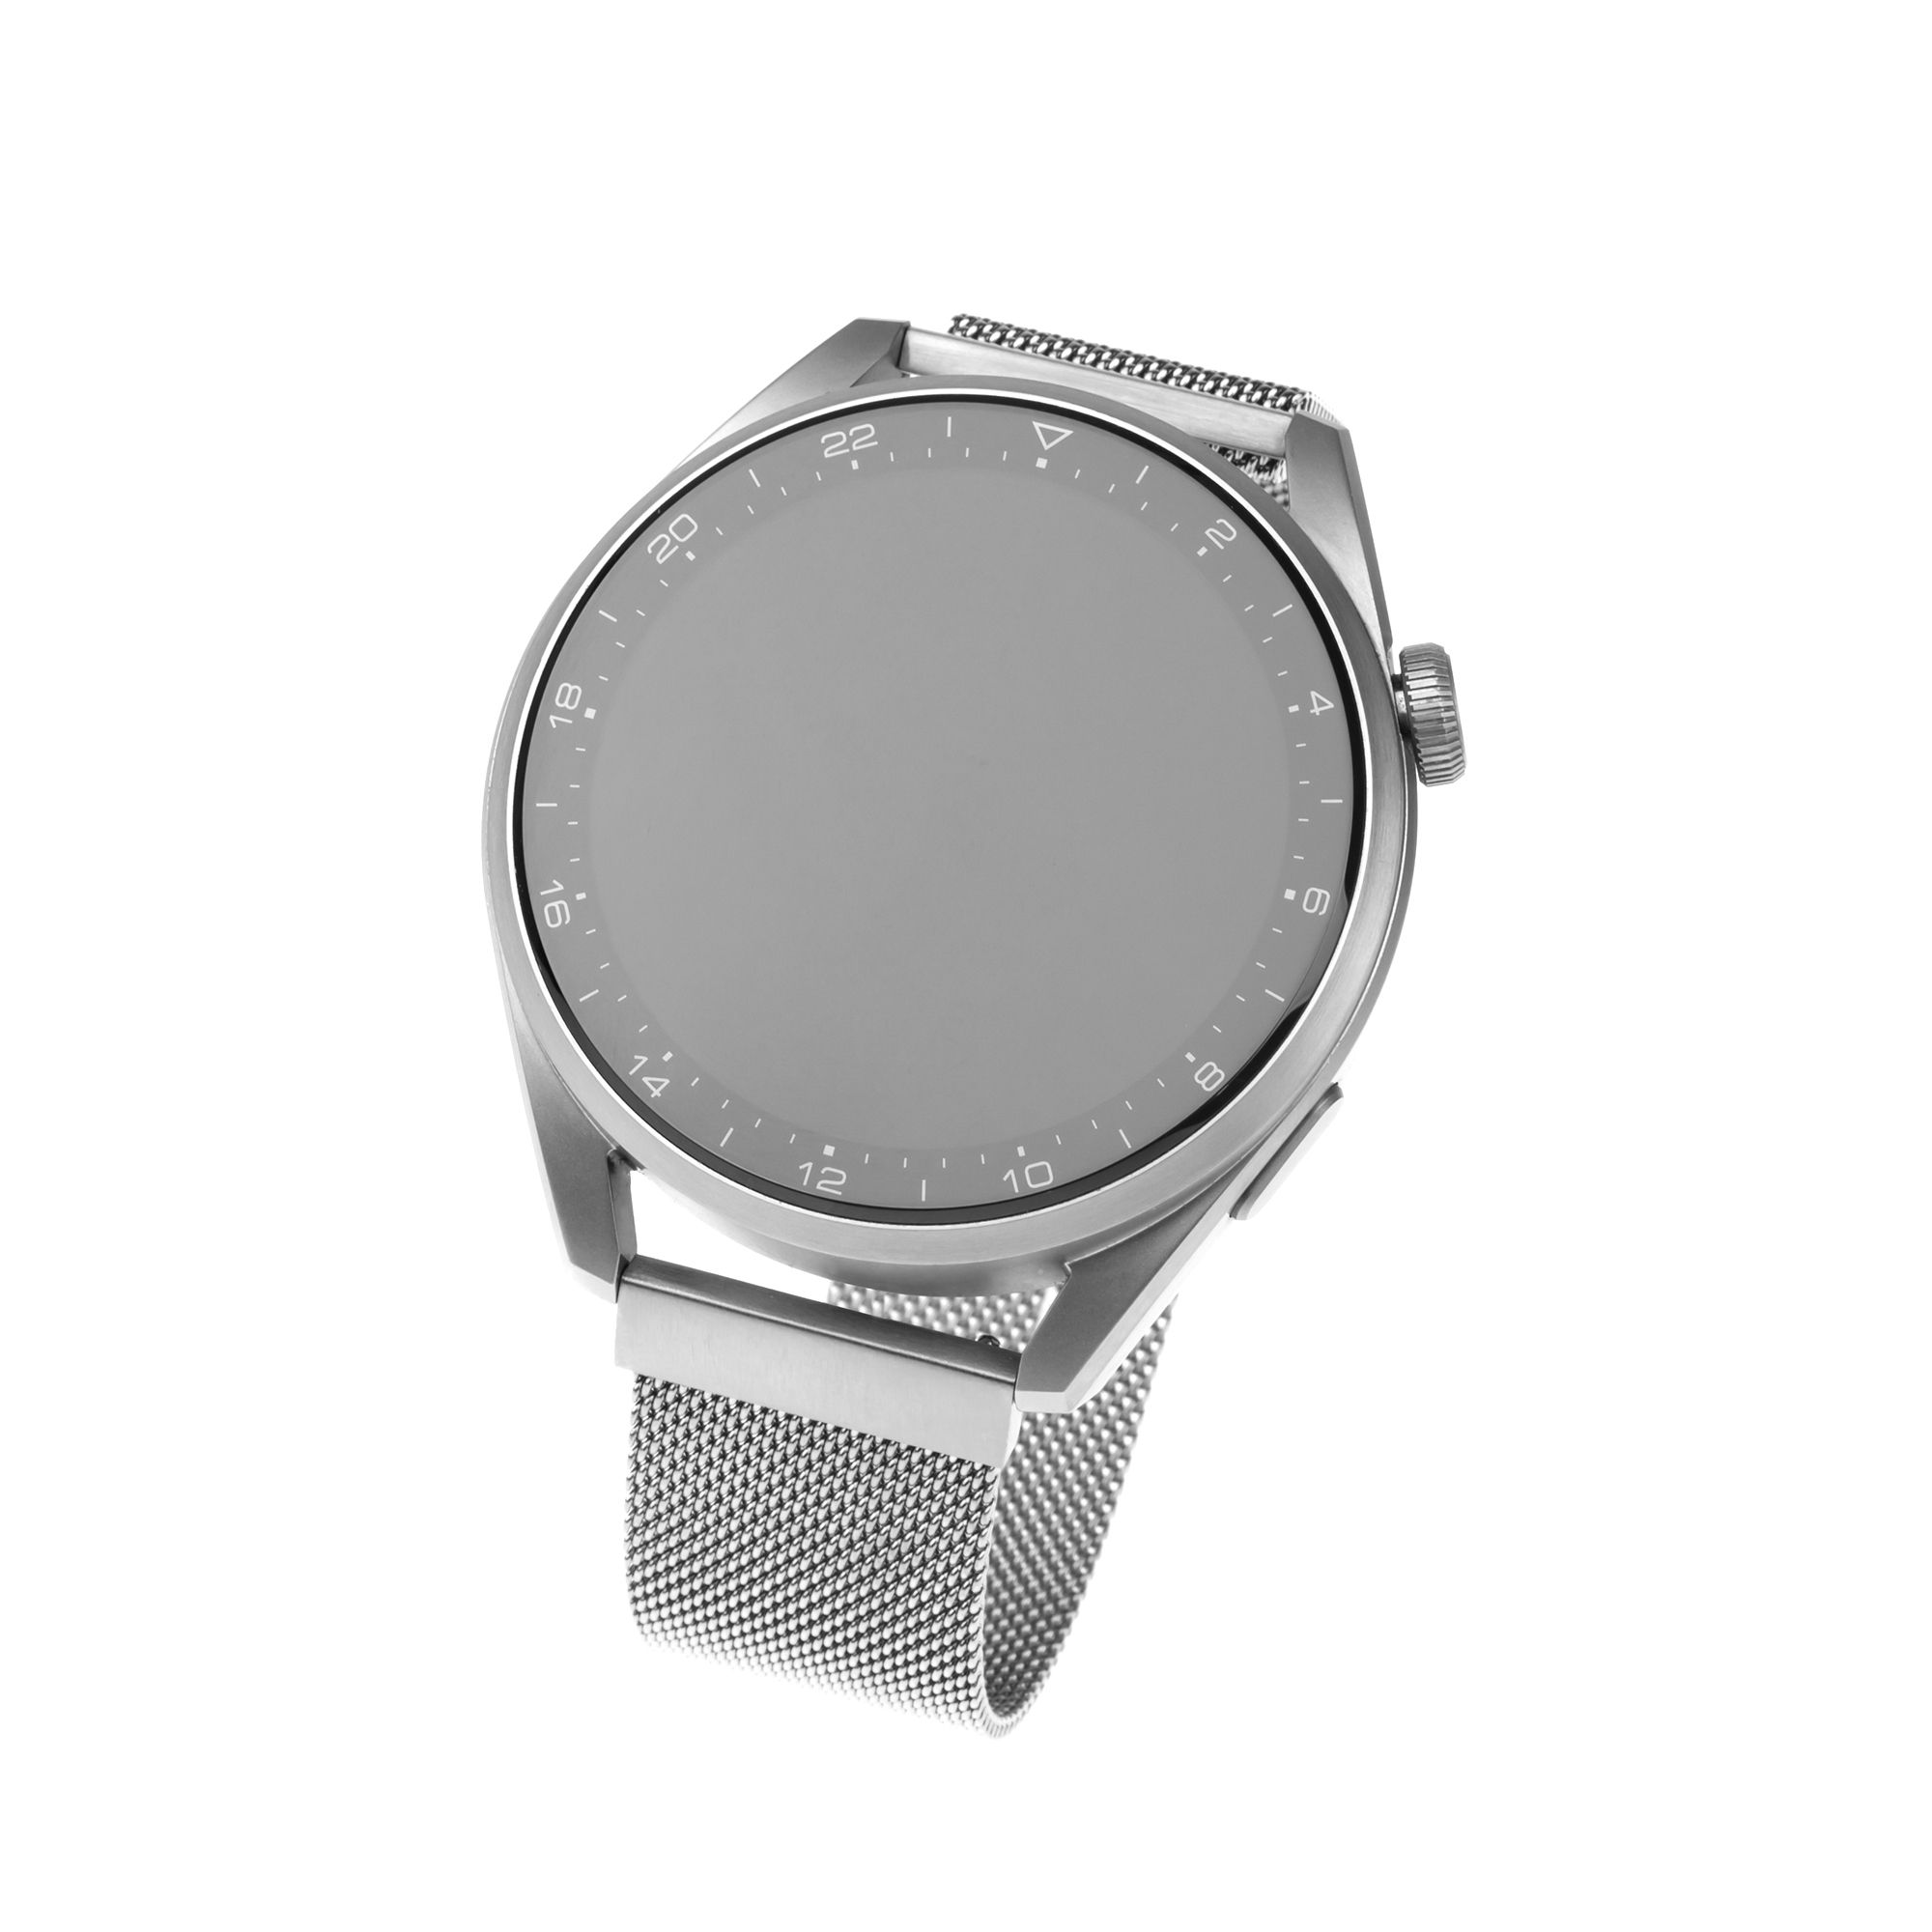 Síťovaný nerezový řemínek Mesh Strap s Quick Release 20mm pro smartwatch, stříbrný